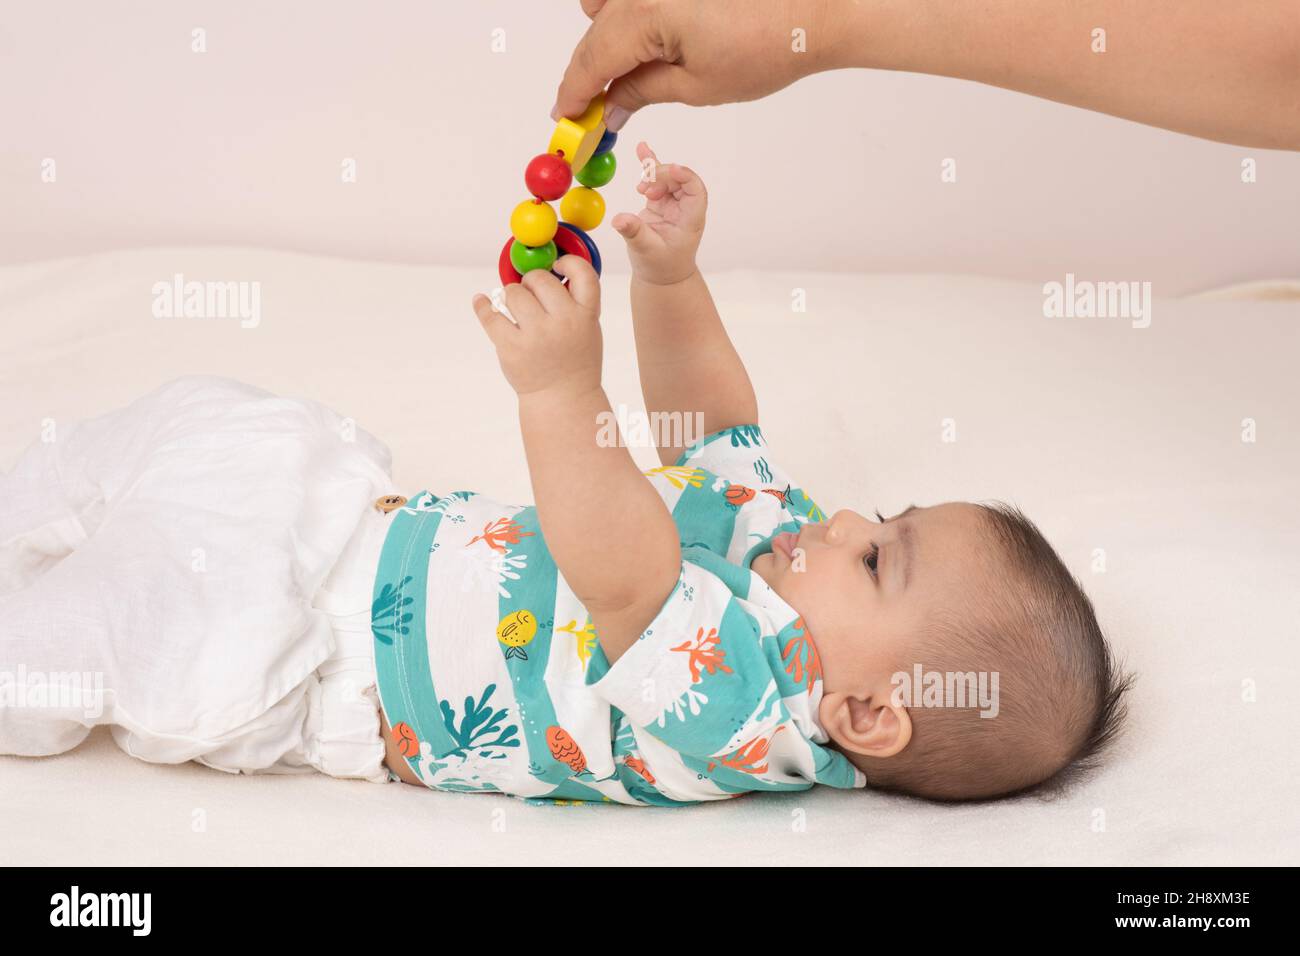 bébé garçon de 3 mois dans le dos pour atteindre le jouet adulte est pendant au-dessus de lui Banque D'Images